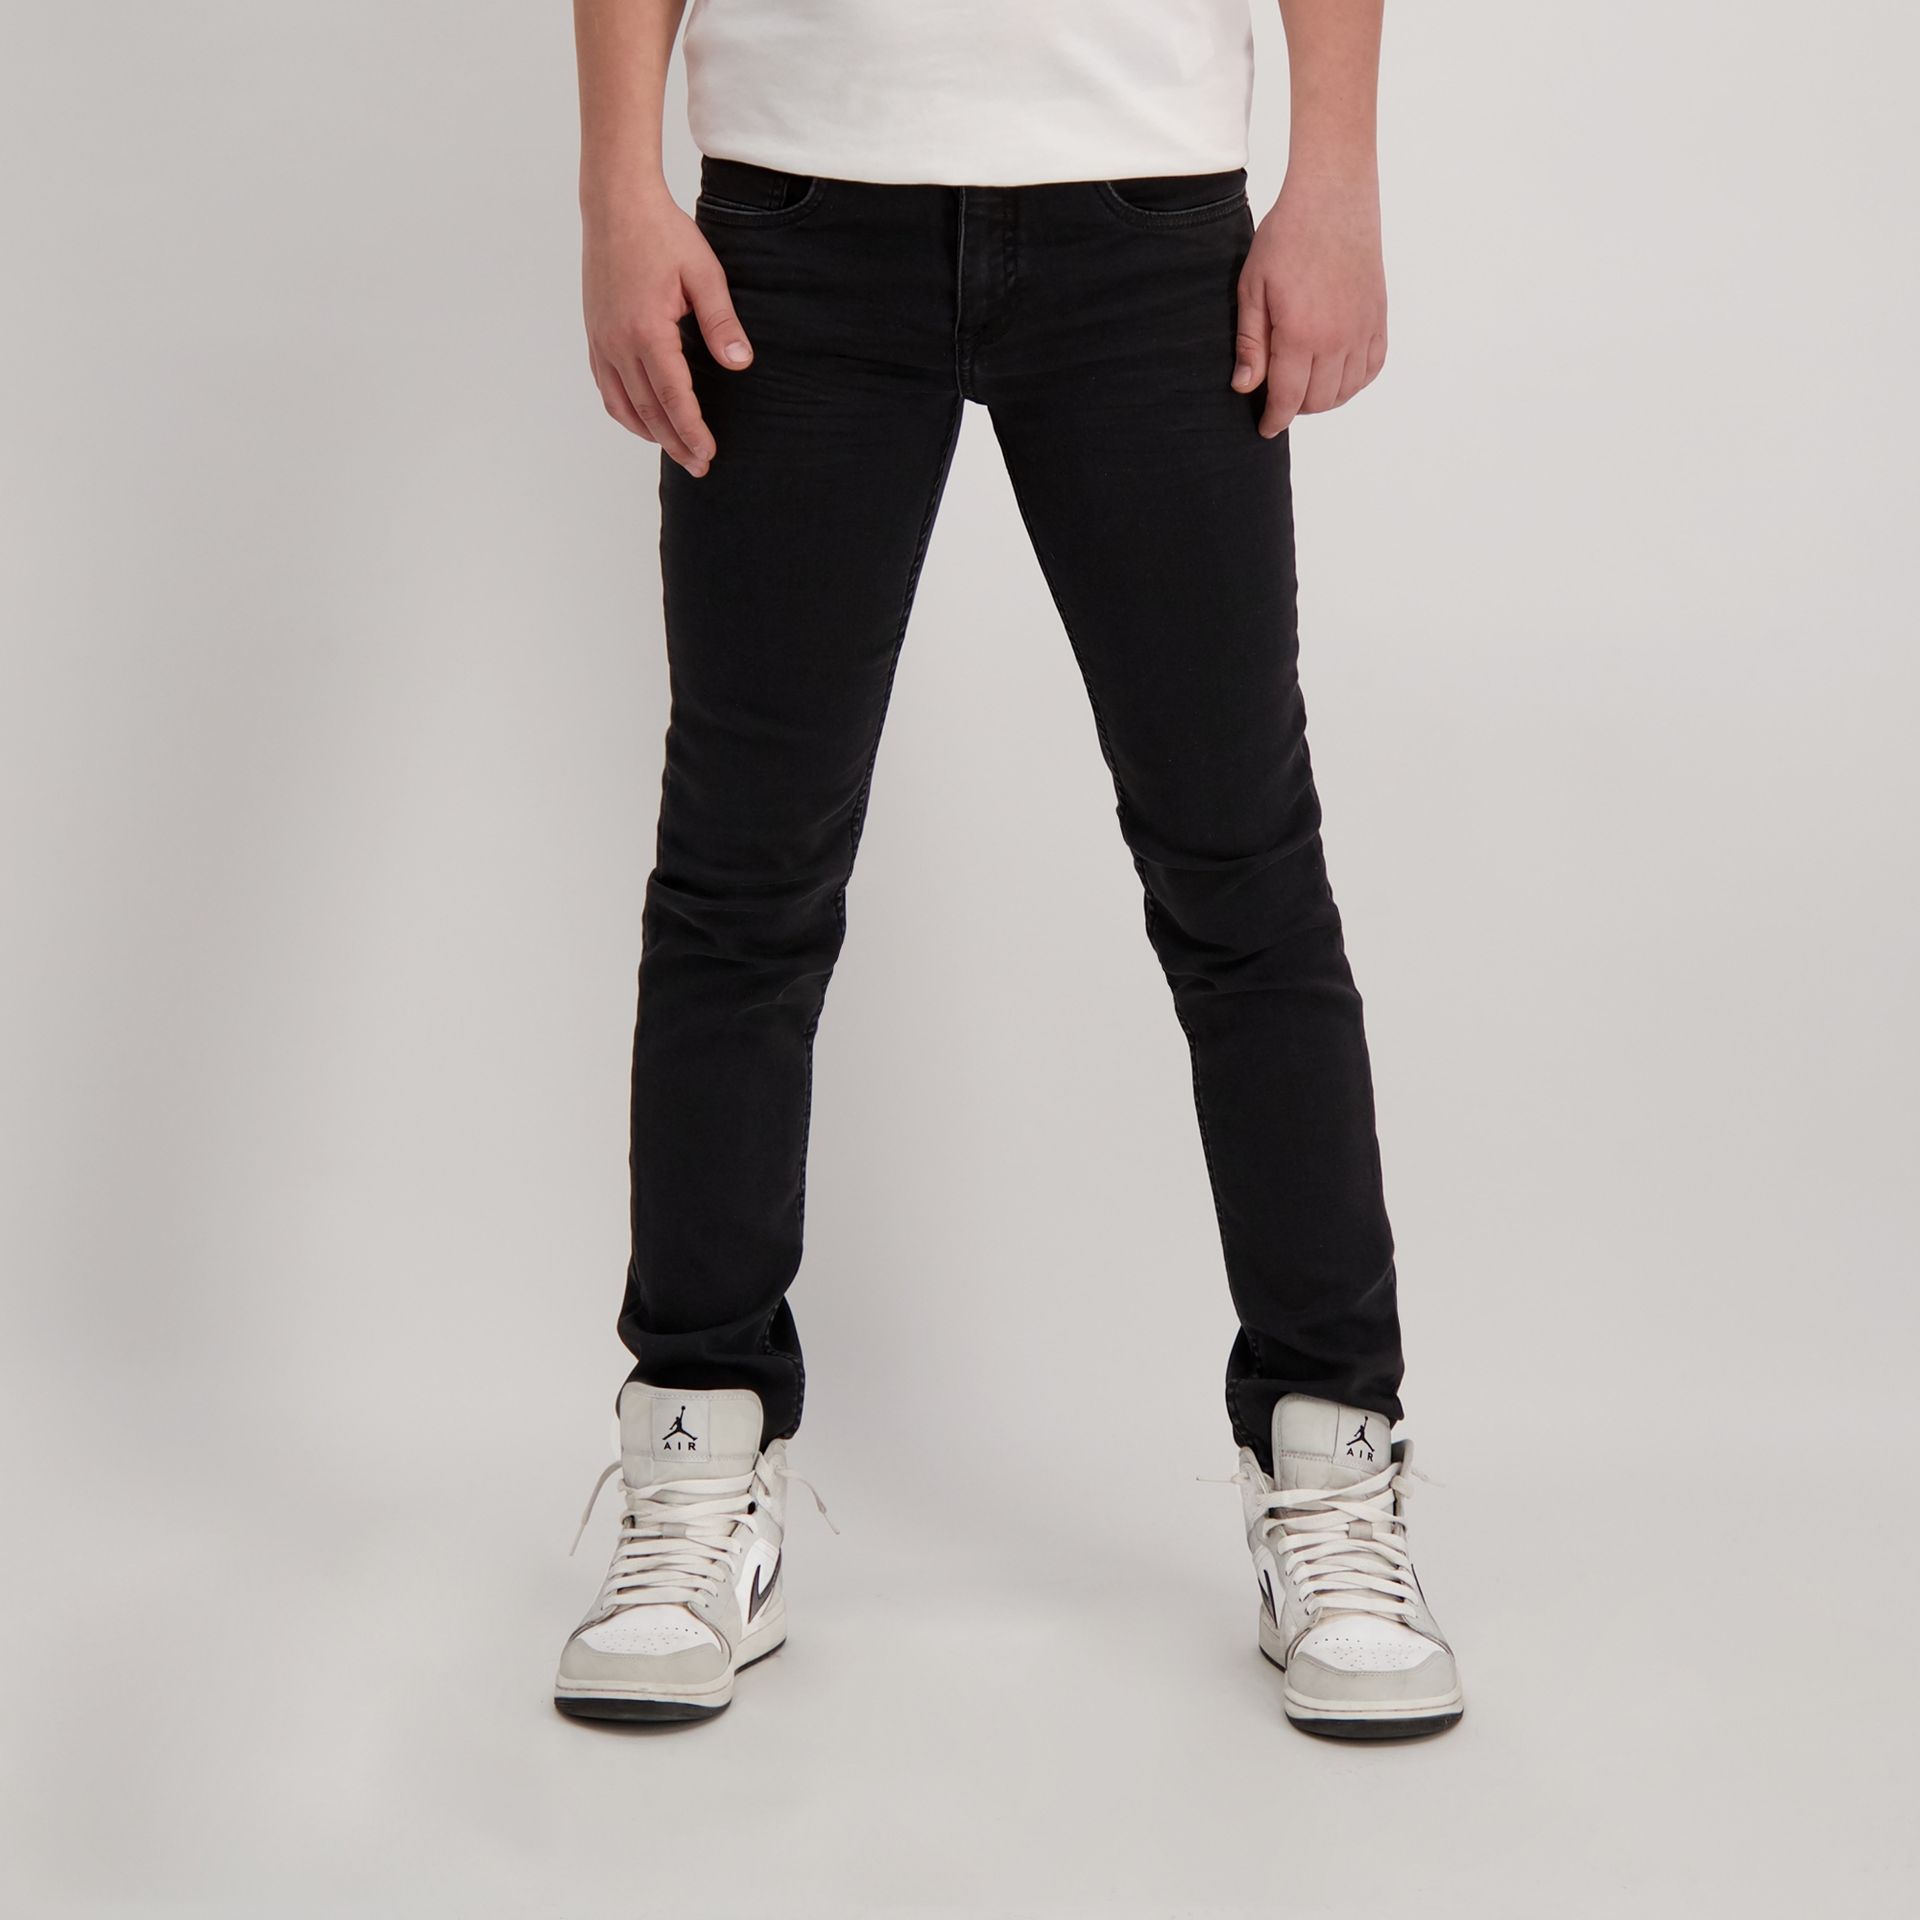 Cars jeans Jeans Prinze Jr. Regular fit 41 black used 00103842-EKA26008400000014